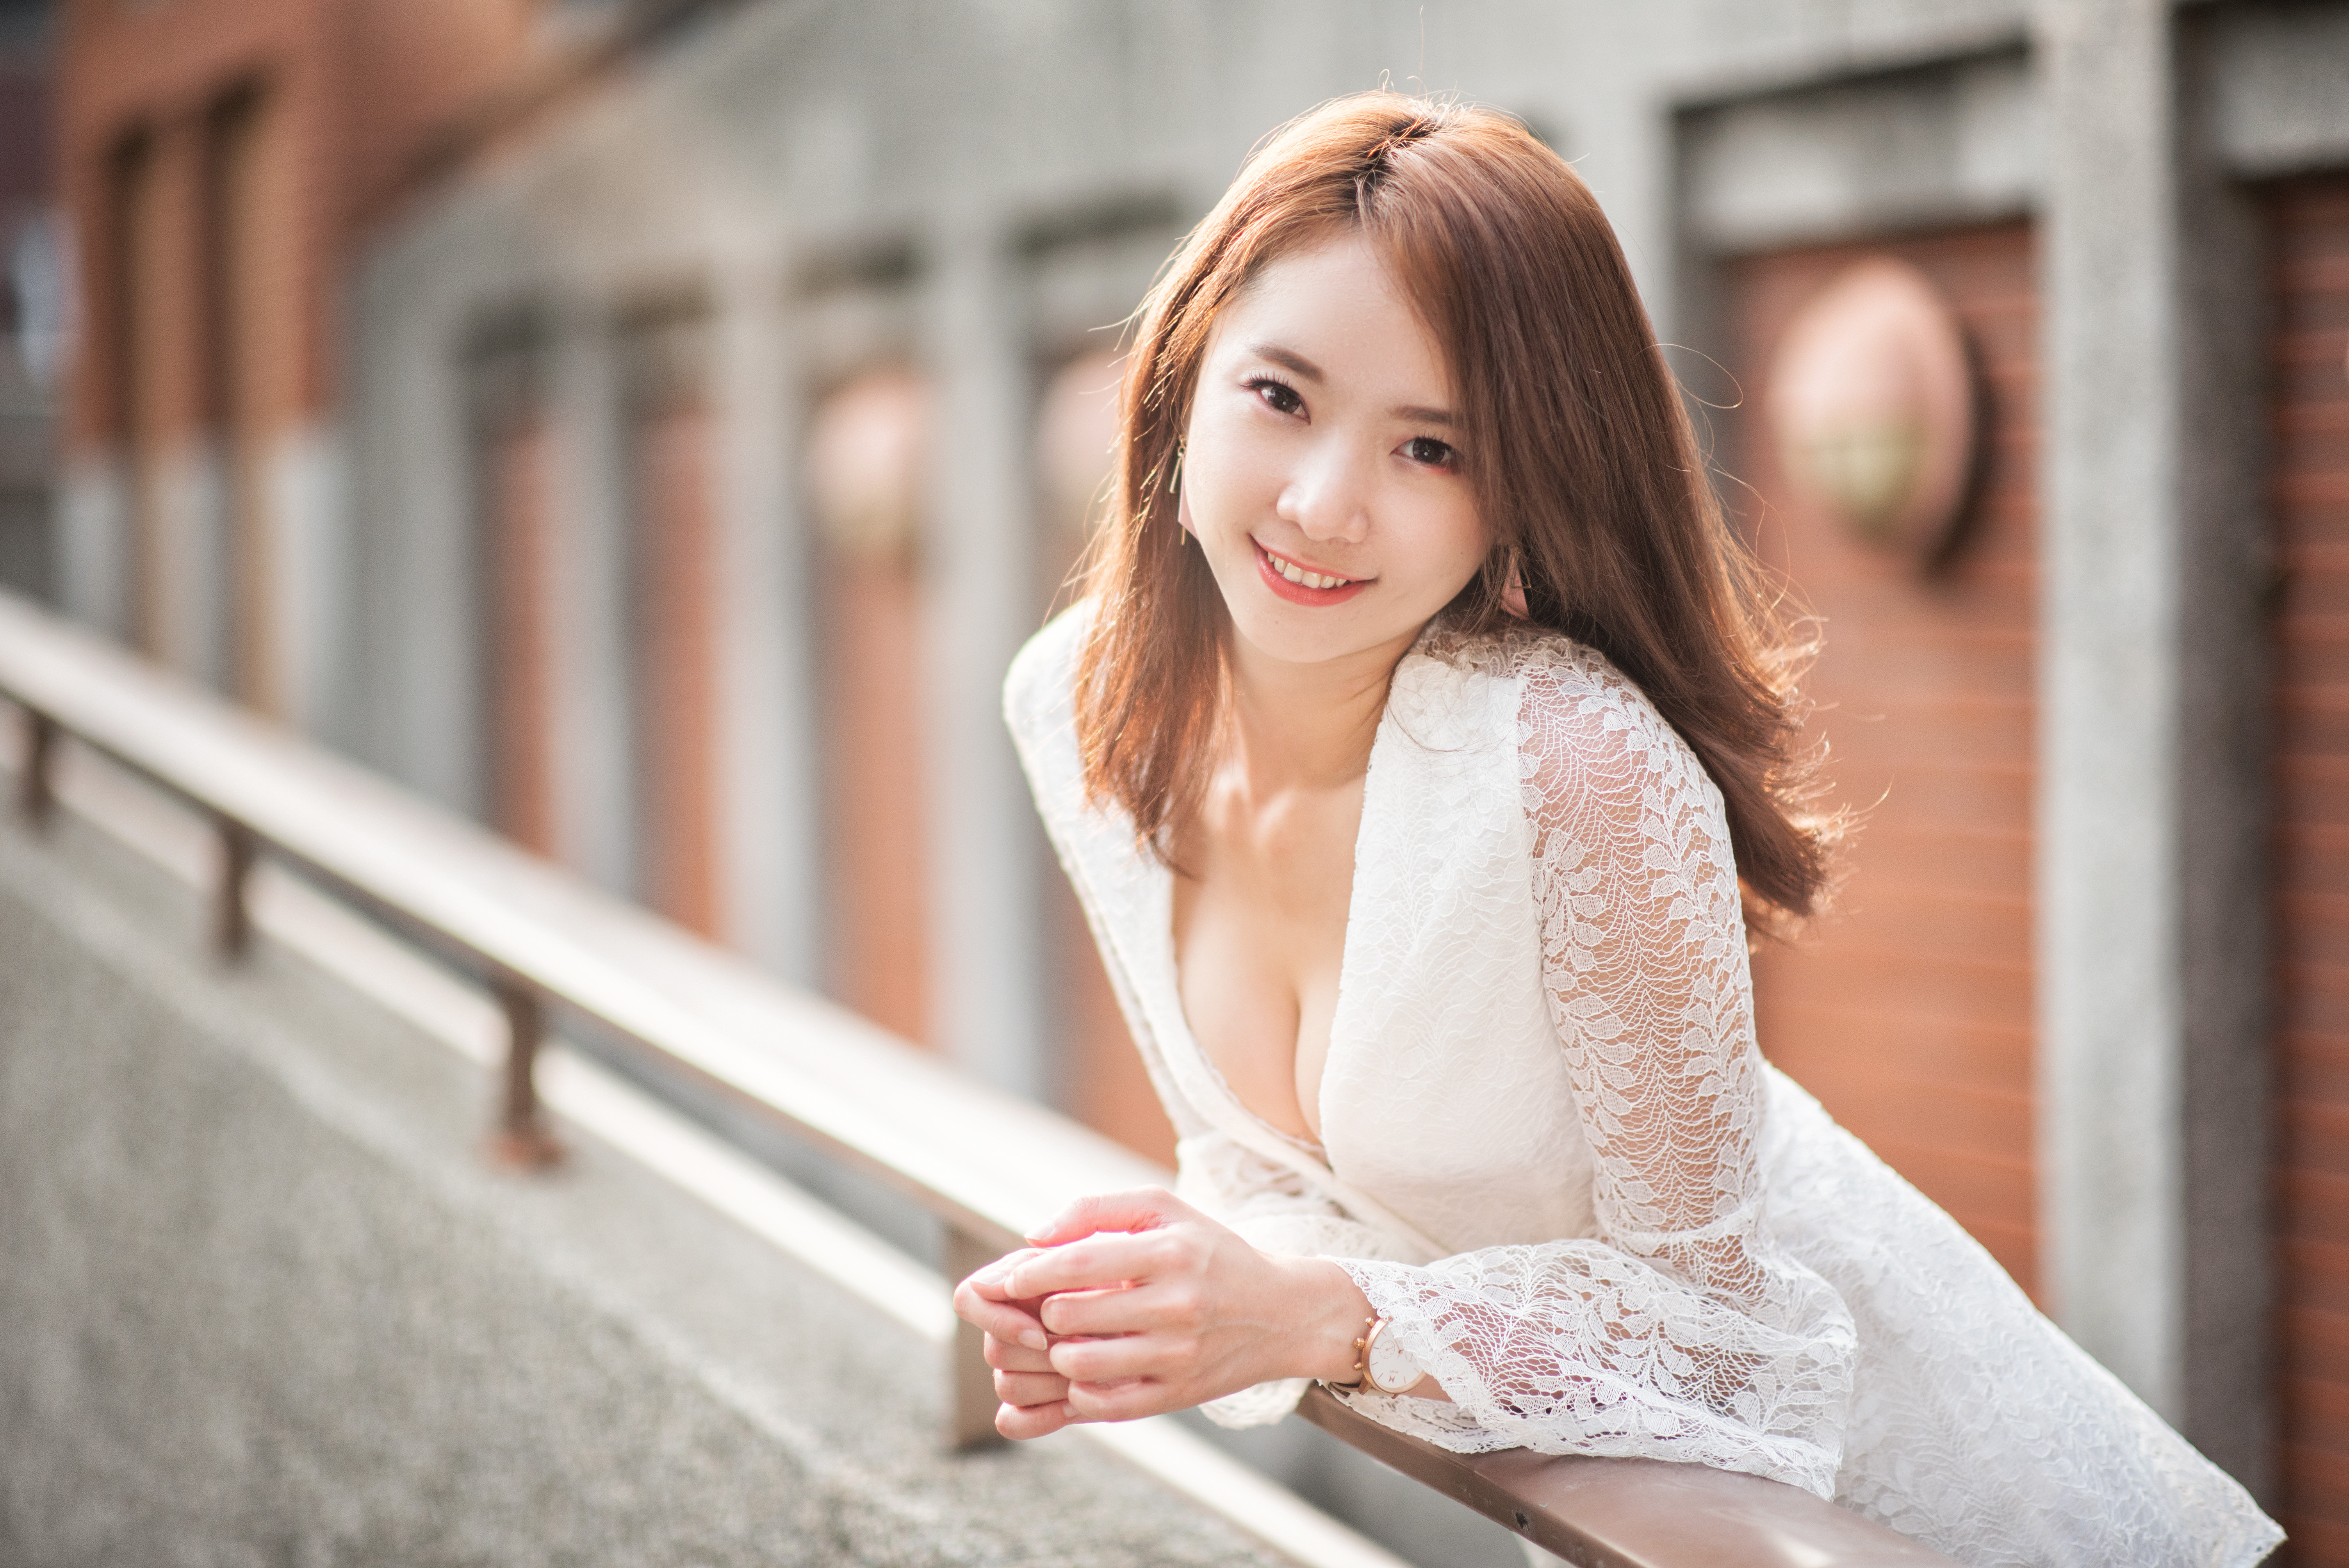 People 6016x4016 Asian model women long hair brunette leaning railing white dress smiling